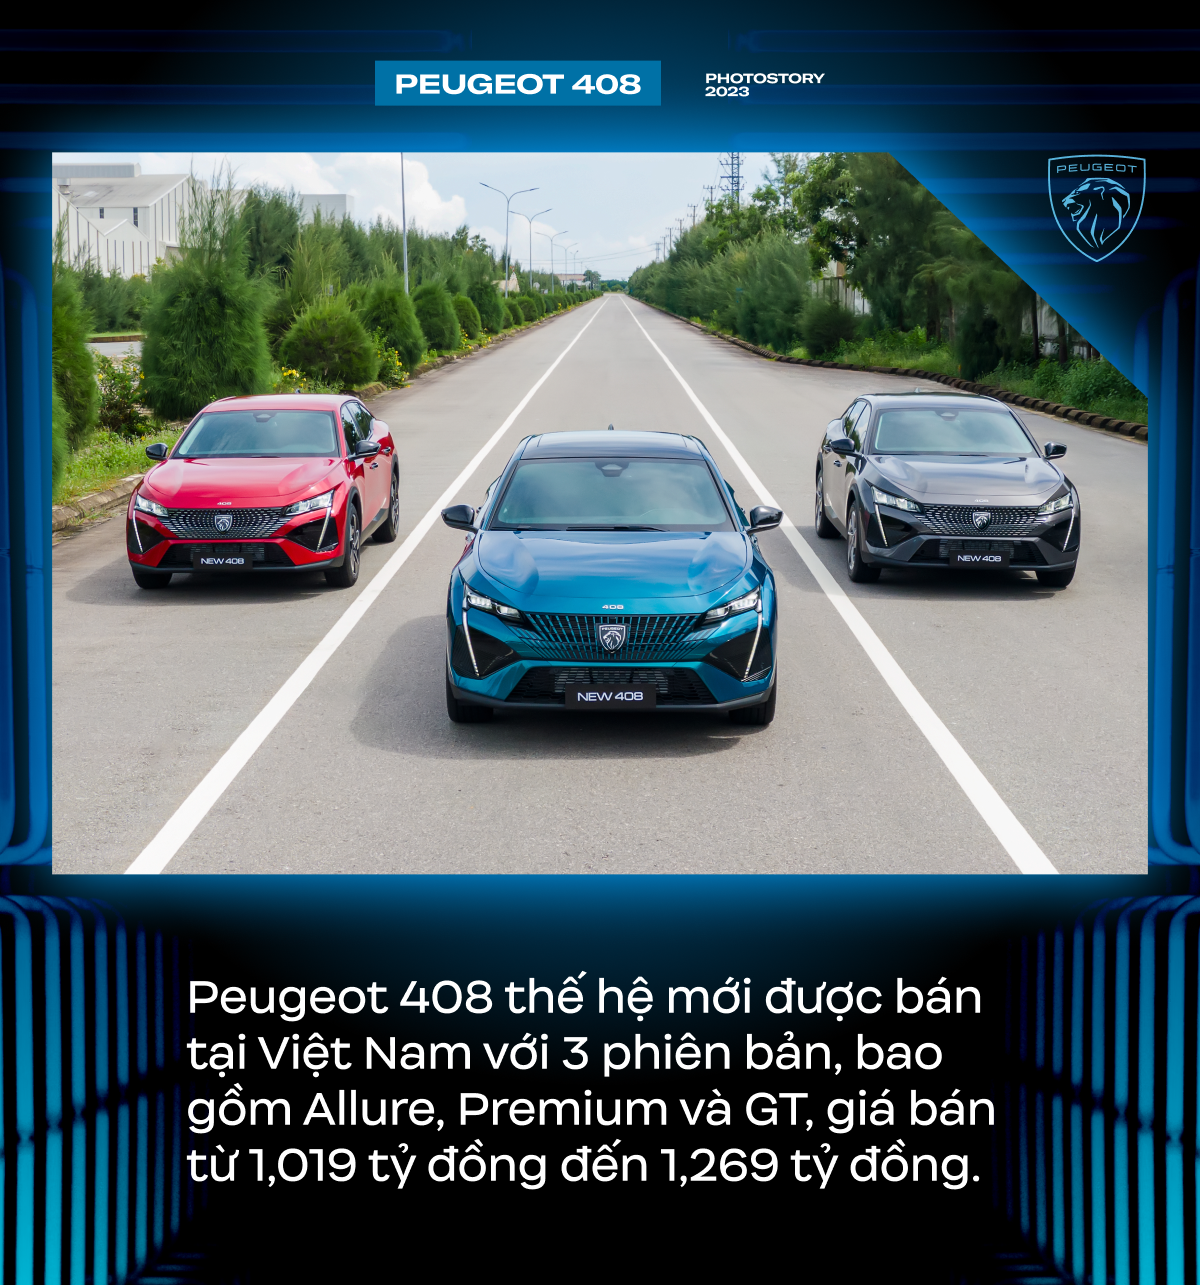 Peugeot 408 - Lựa chọn khác biệt cho người Việt ở phân khúc SUV hạng C - Ảnh 11.